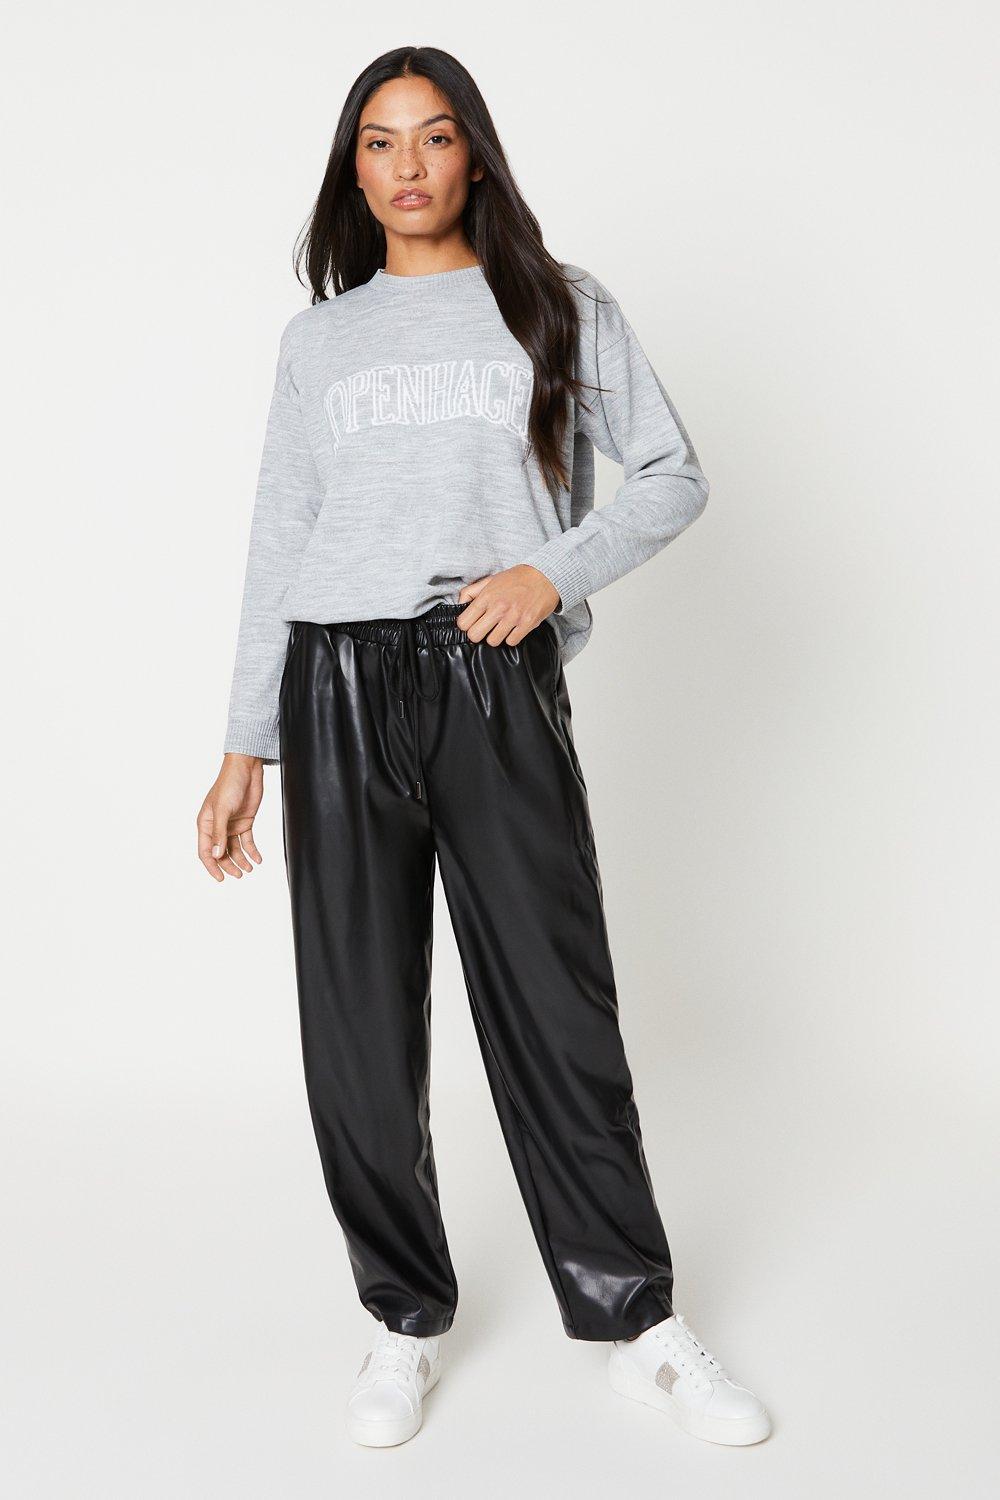 Women's Slogan Knitted Jumper - light grey - XL